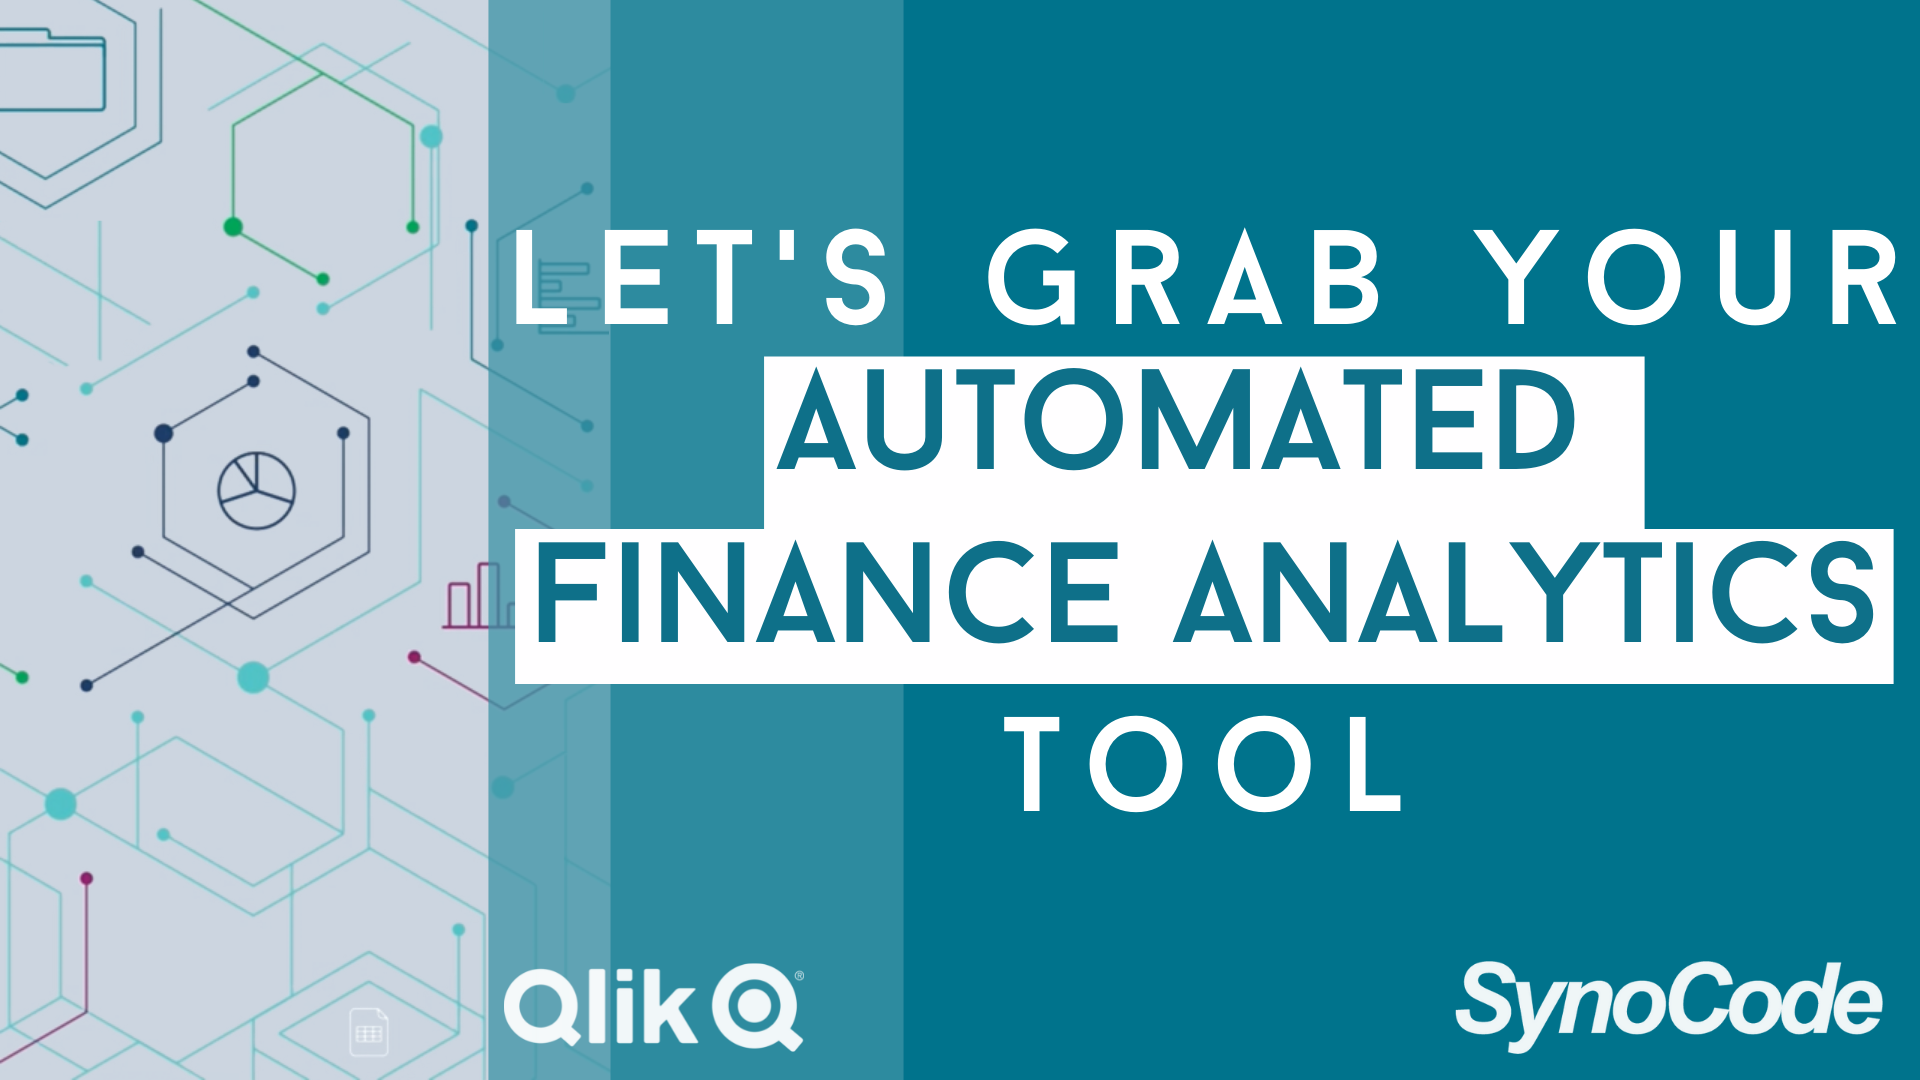 [廣東話] Use Case 02 - Let's grab your Automated Finance Analytics Tool! 馬上使用自動化財務分析工具吧！